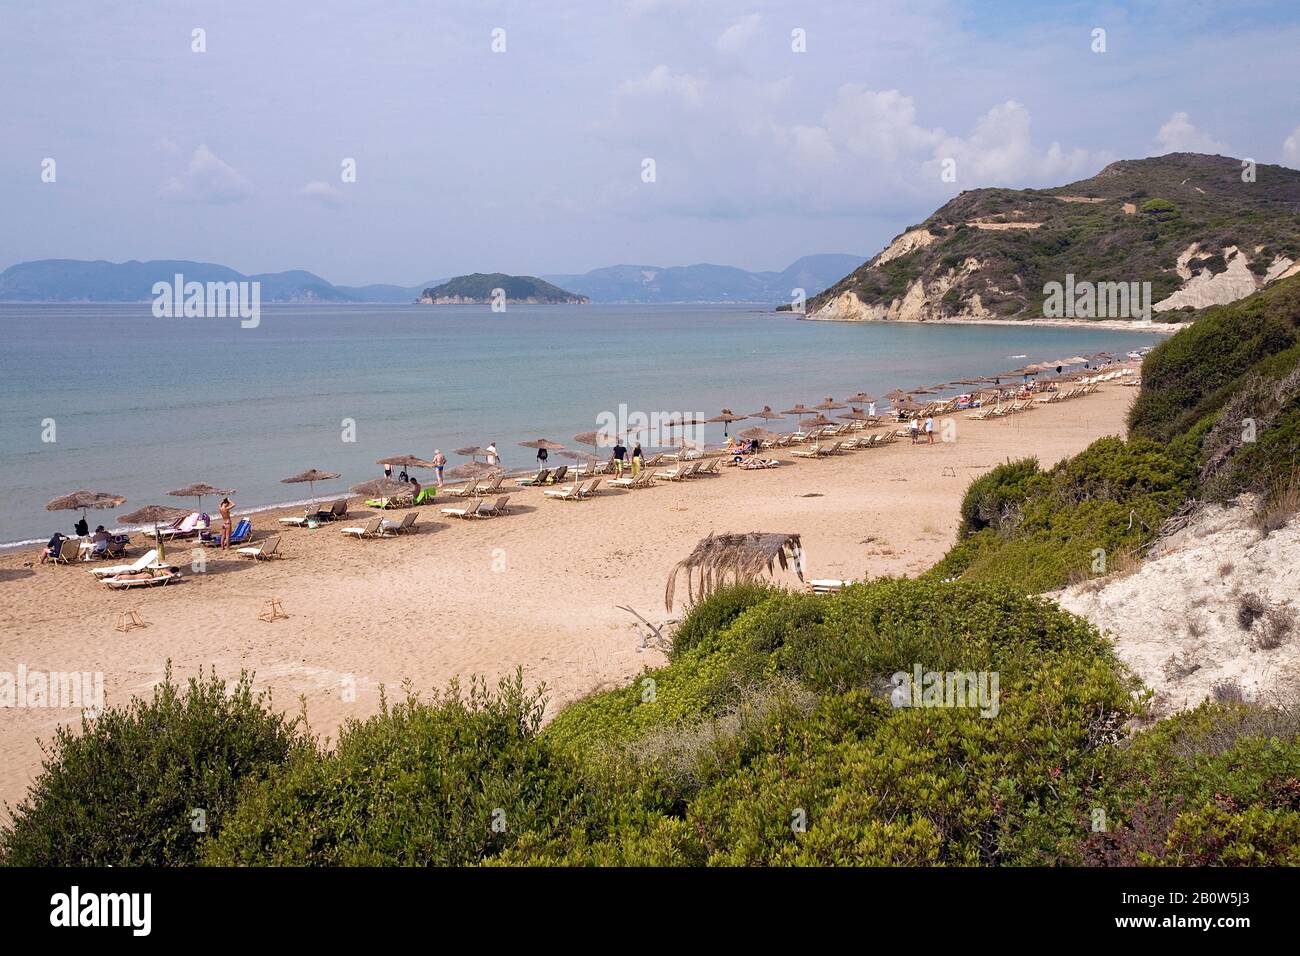 Spiaggia di Gerakas, spiaggia per turismo limitato, parco marino e nesting spiaggia per tartarughe marine, isola di Zante, Grecia Foto Stock